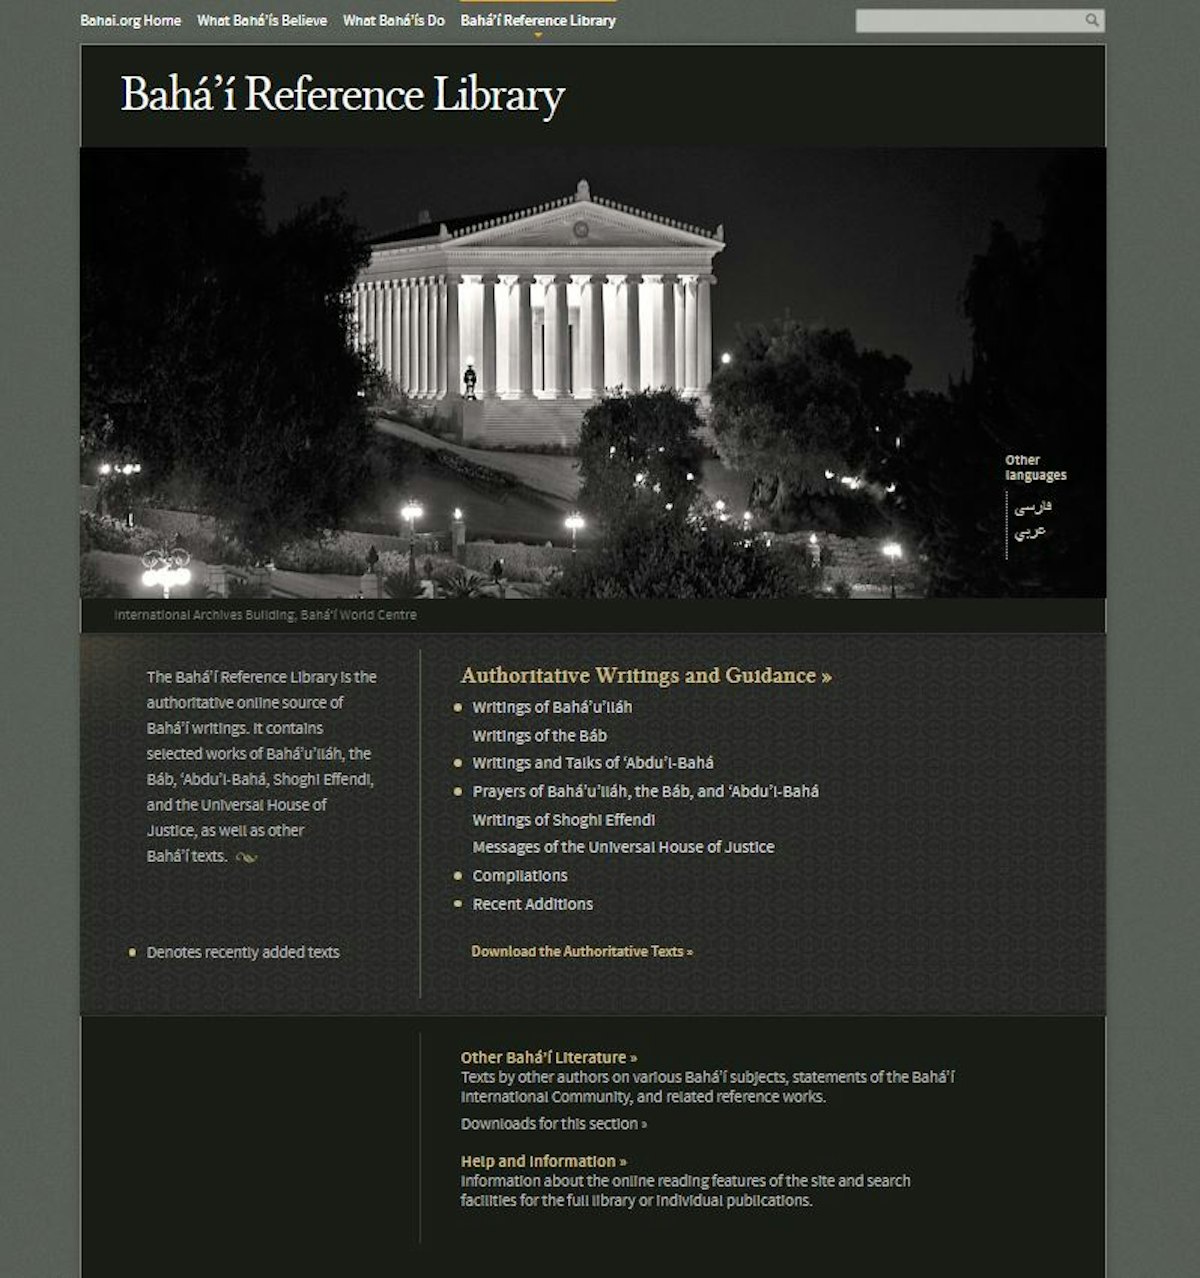 Más de 100 tablas y pasajes de los escritos de Bahá'u'lláh y de Abdu'l-Bahá se han publicado hoy en línea en la Biblioteca bahá'í de referencia.